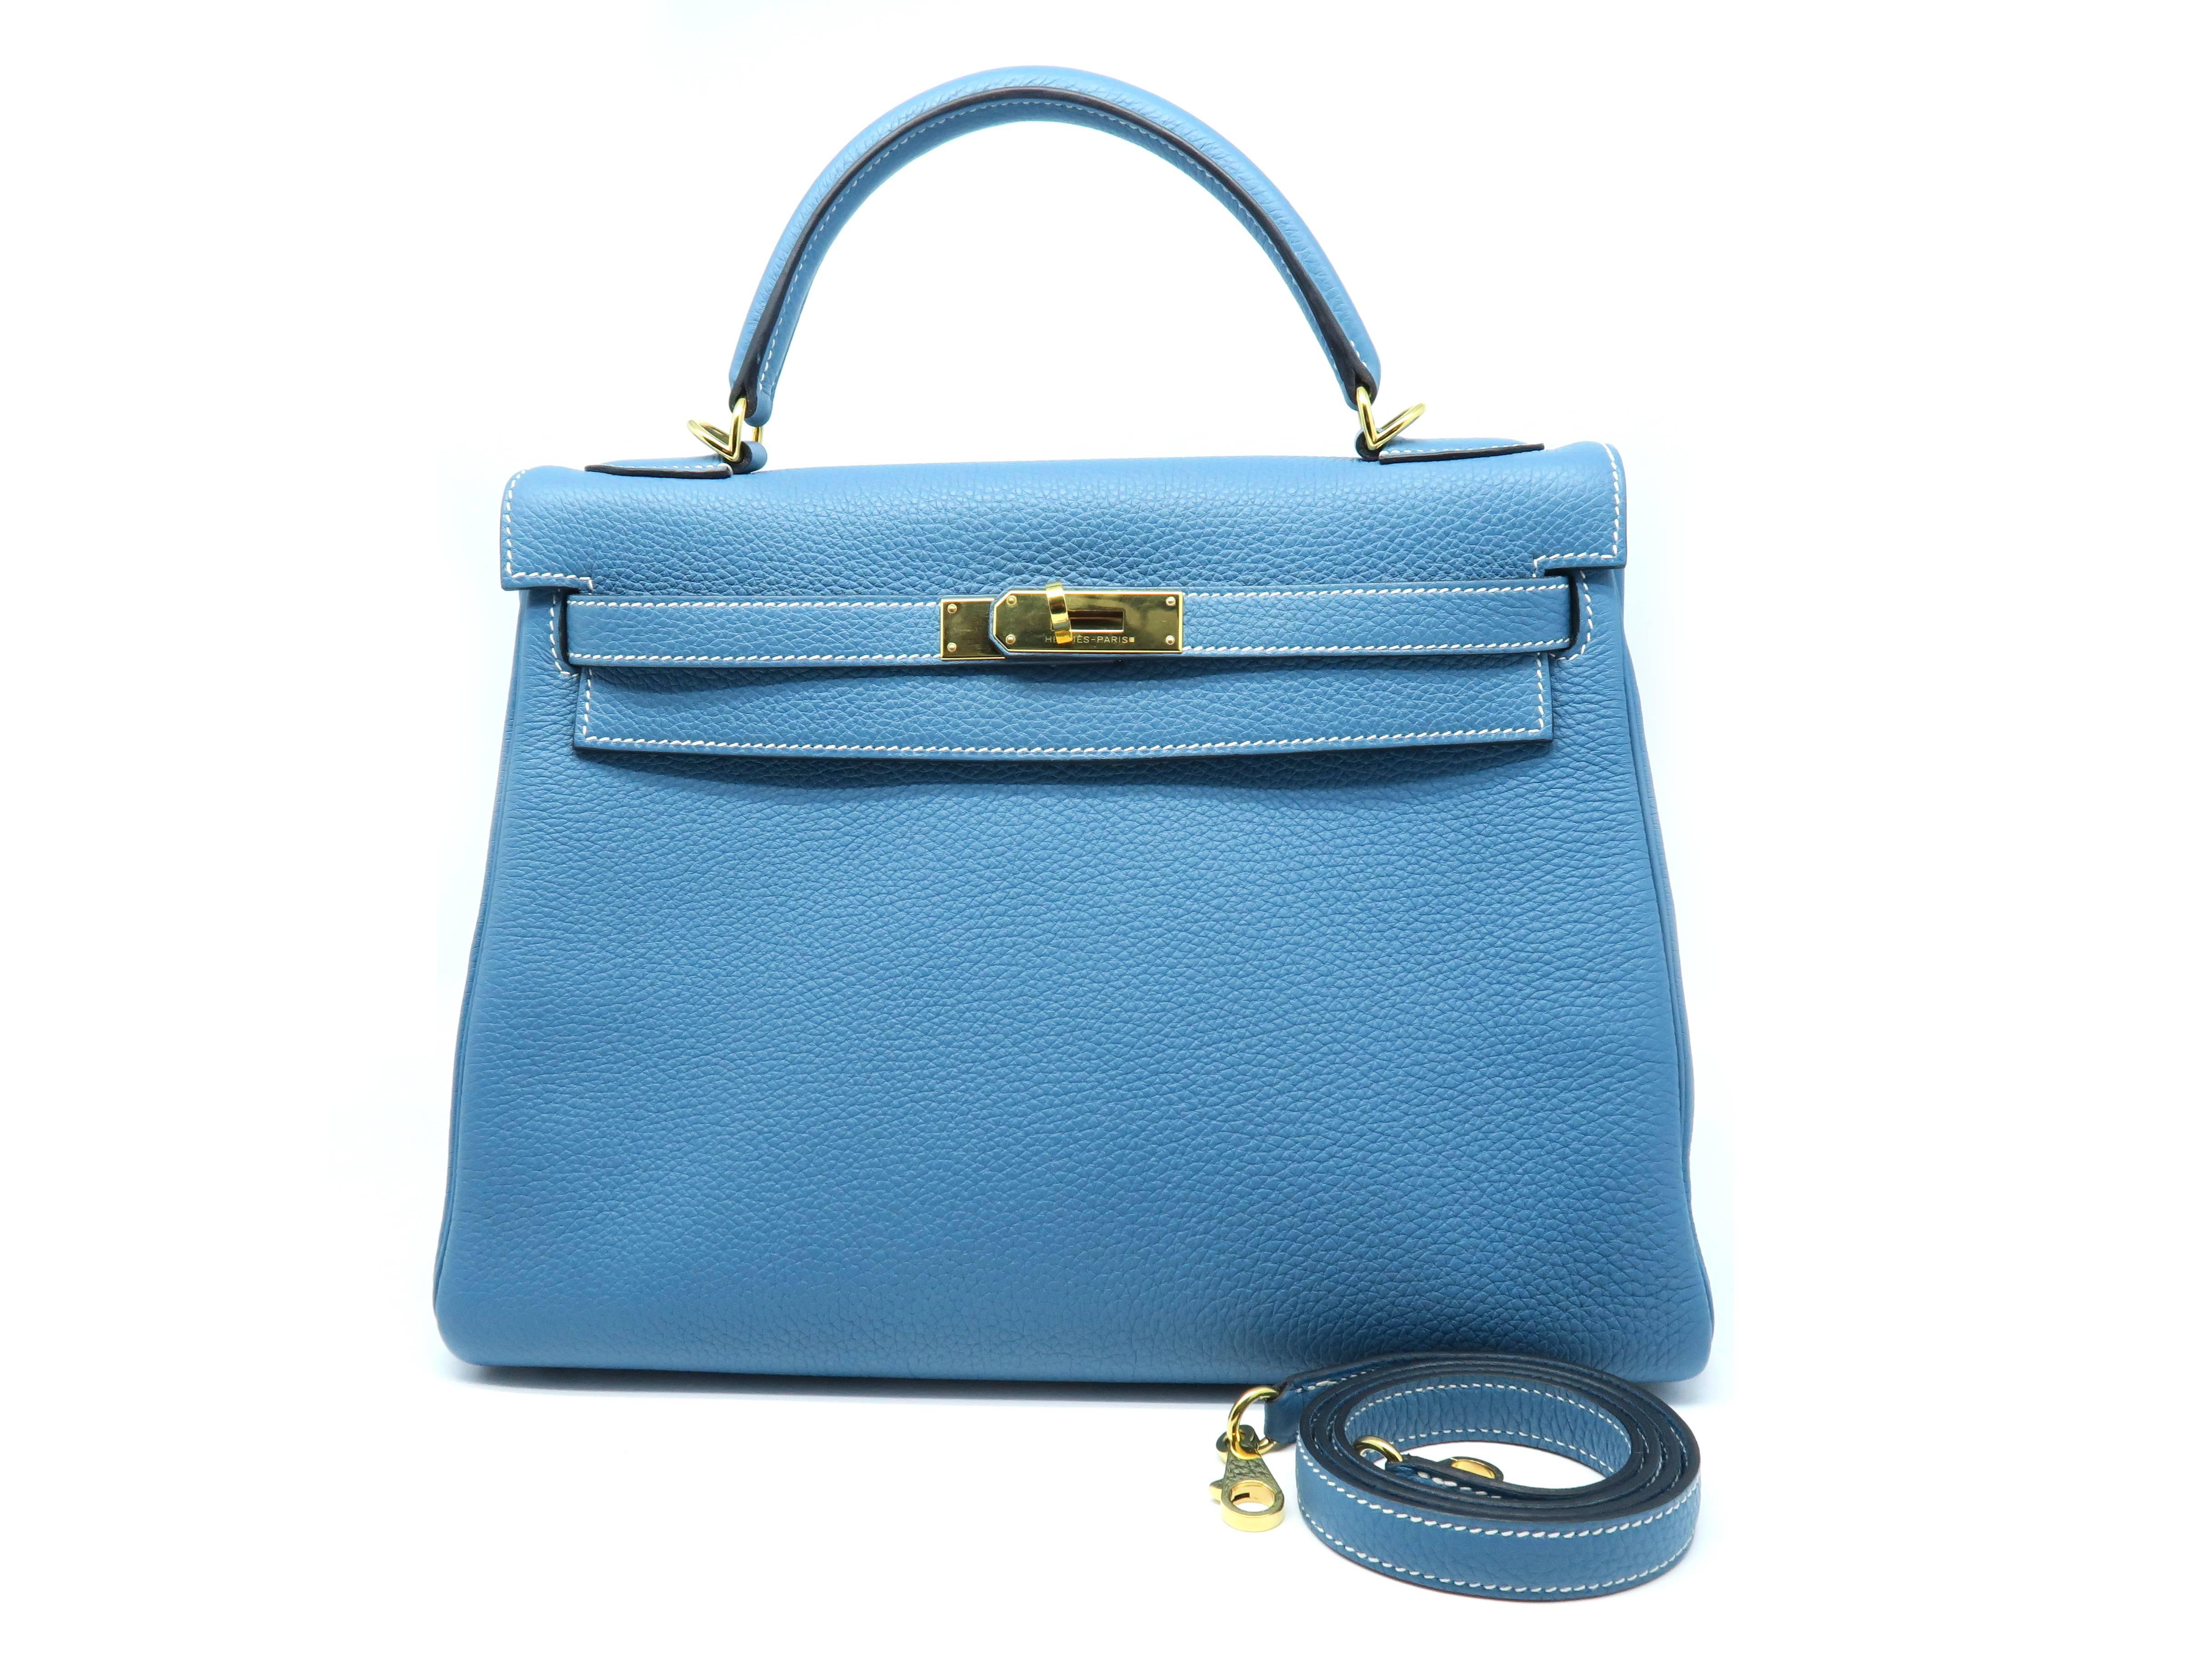 Hermes Kelly 32 Blue / Bleu Jean Togo Leather Satchel Bag 4